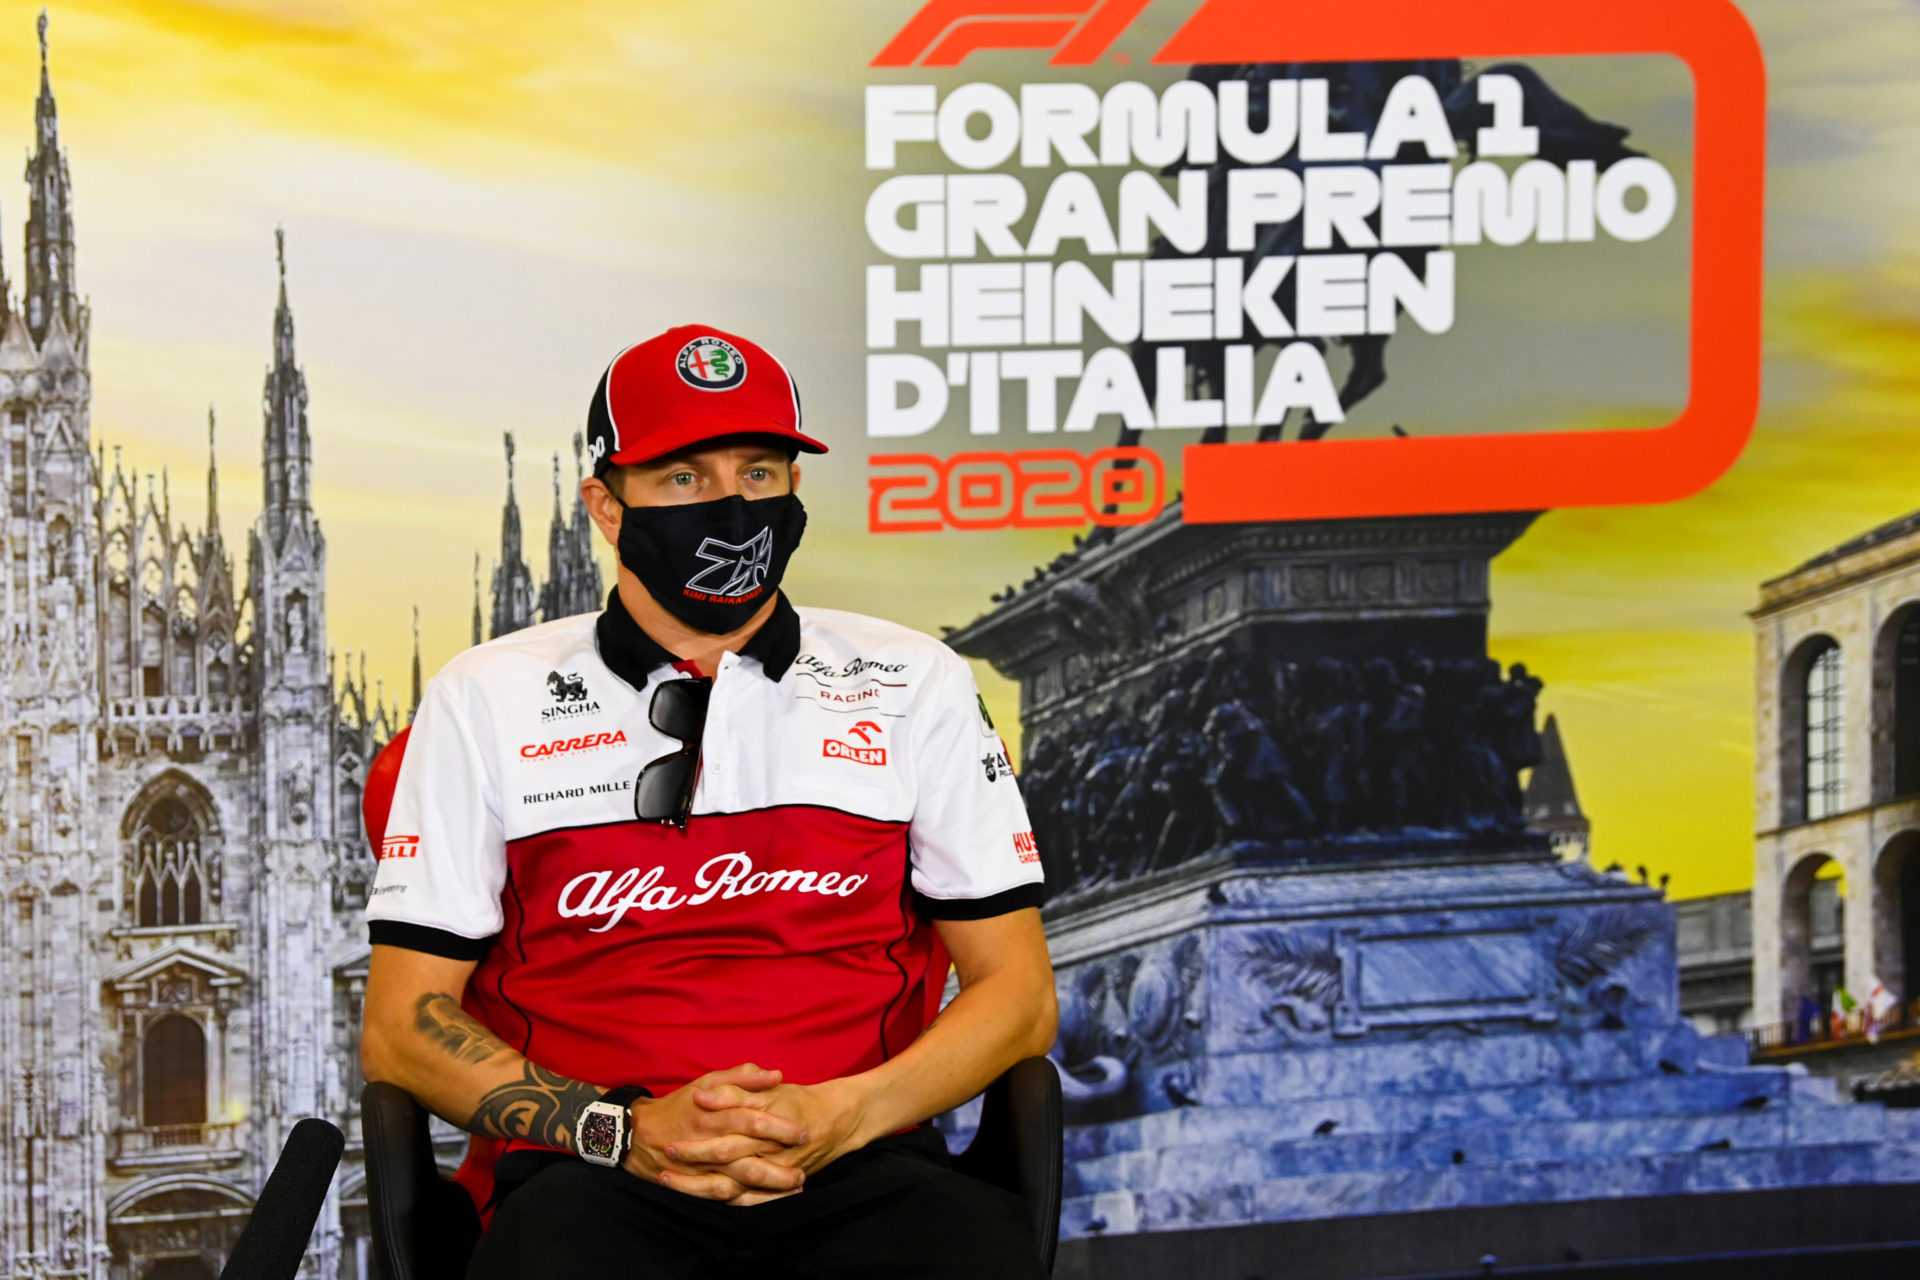 Kimi Raikonnen lors de la conférence de presse du GP d'Italie